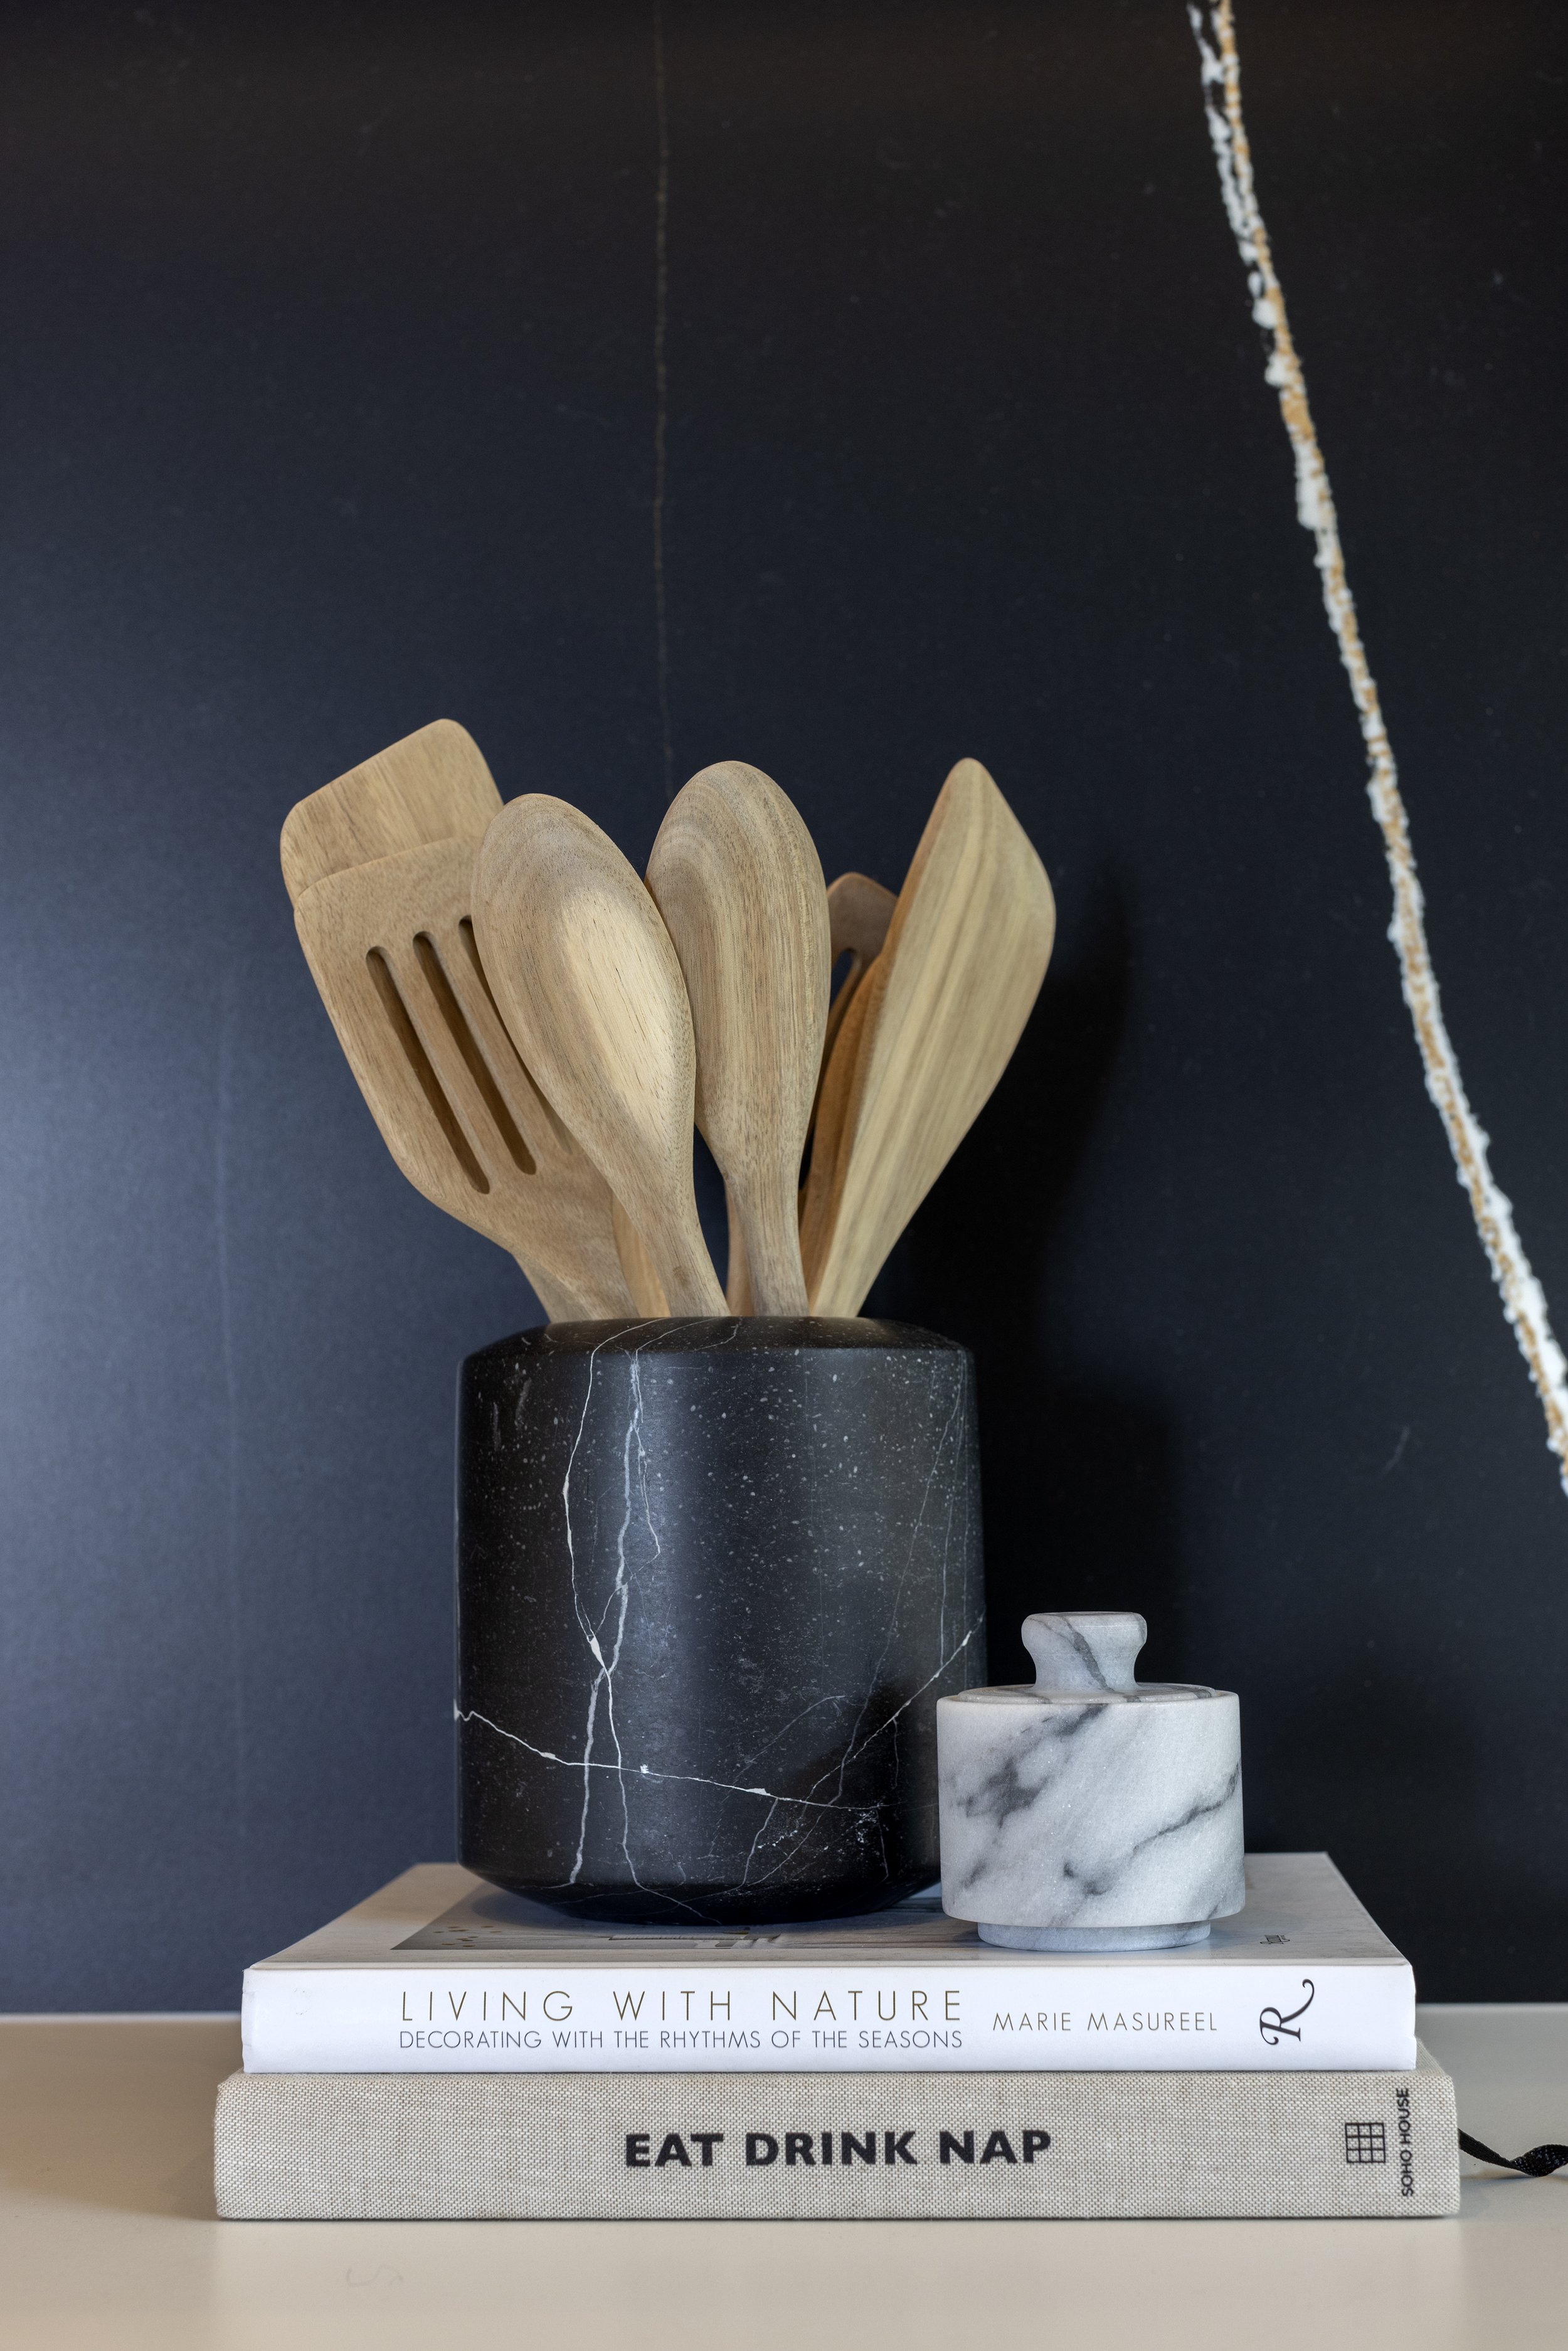 Wooden spoons in black vase